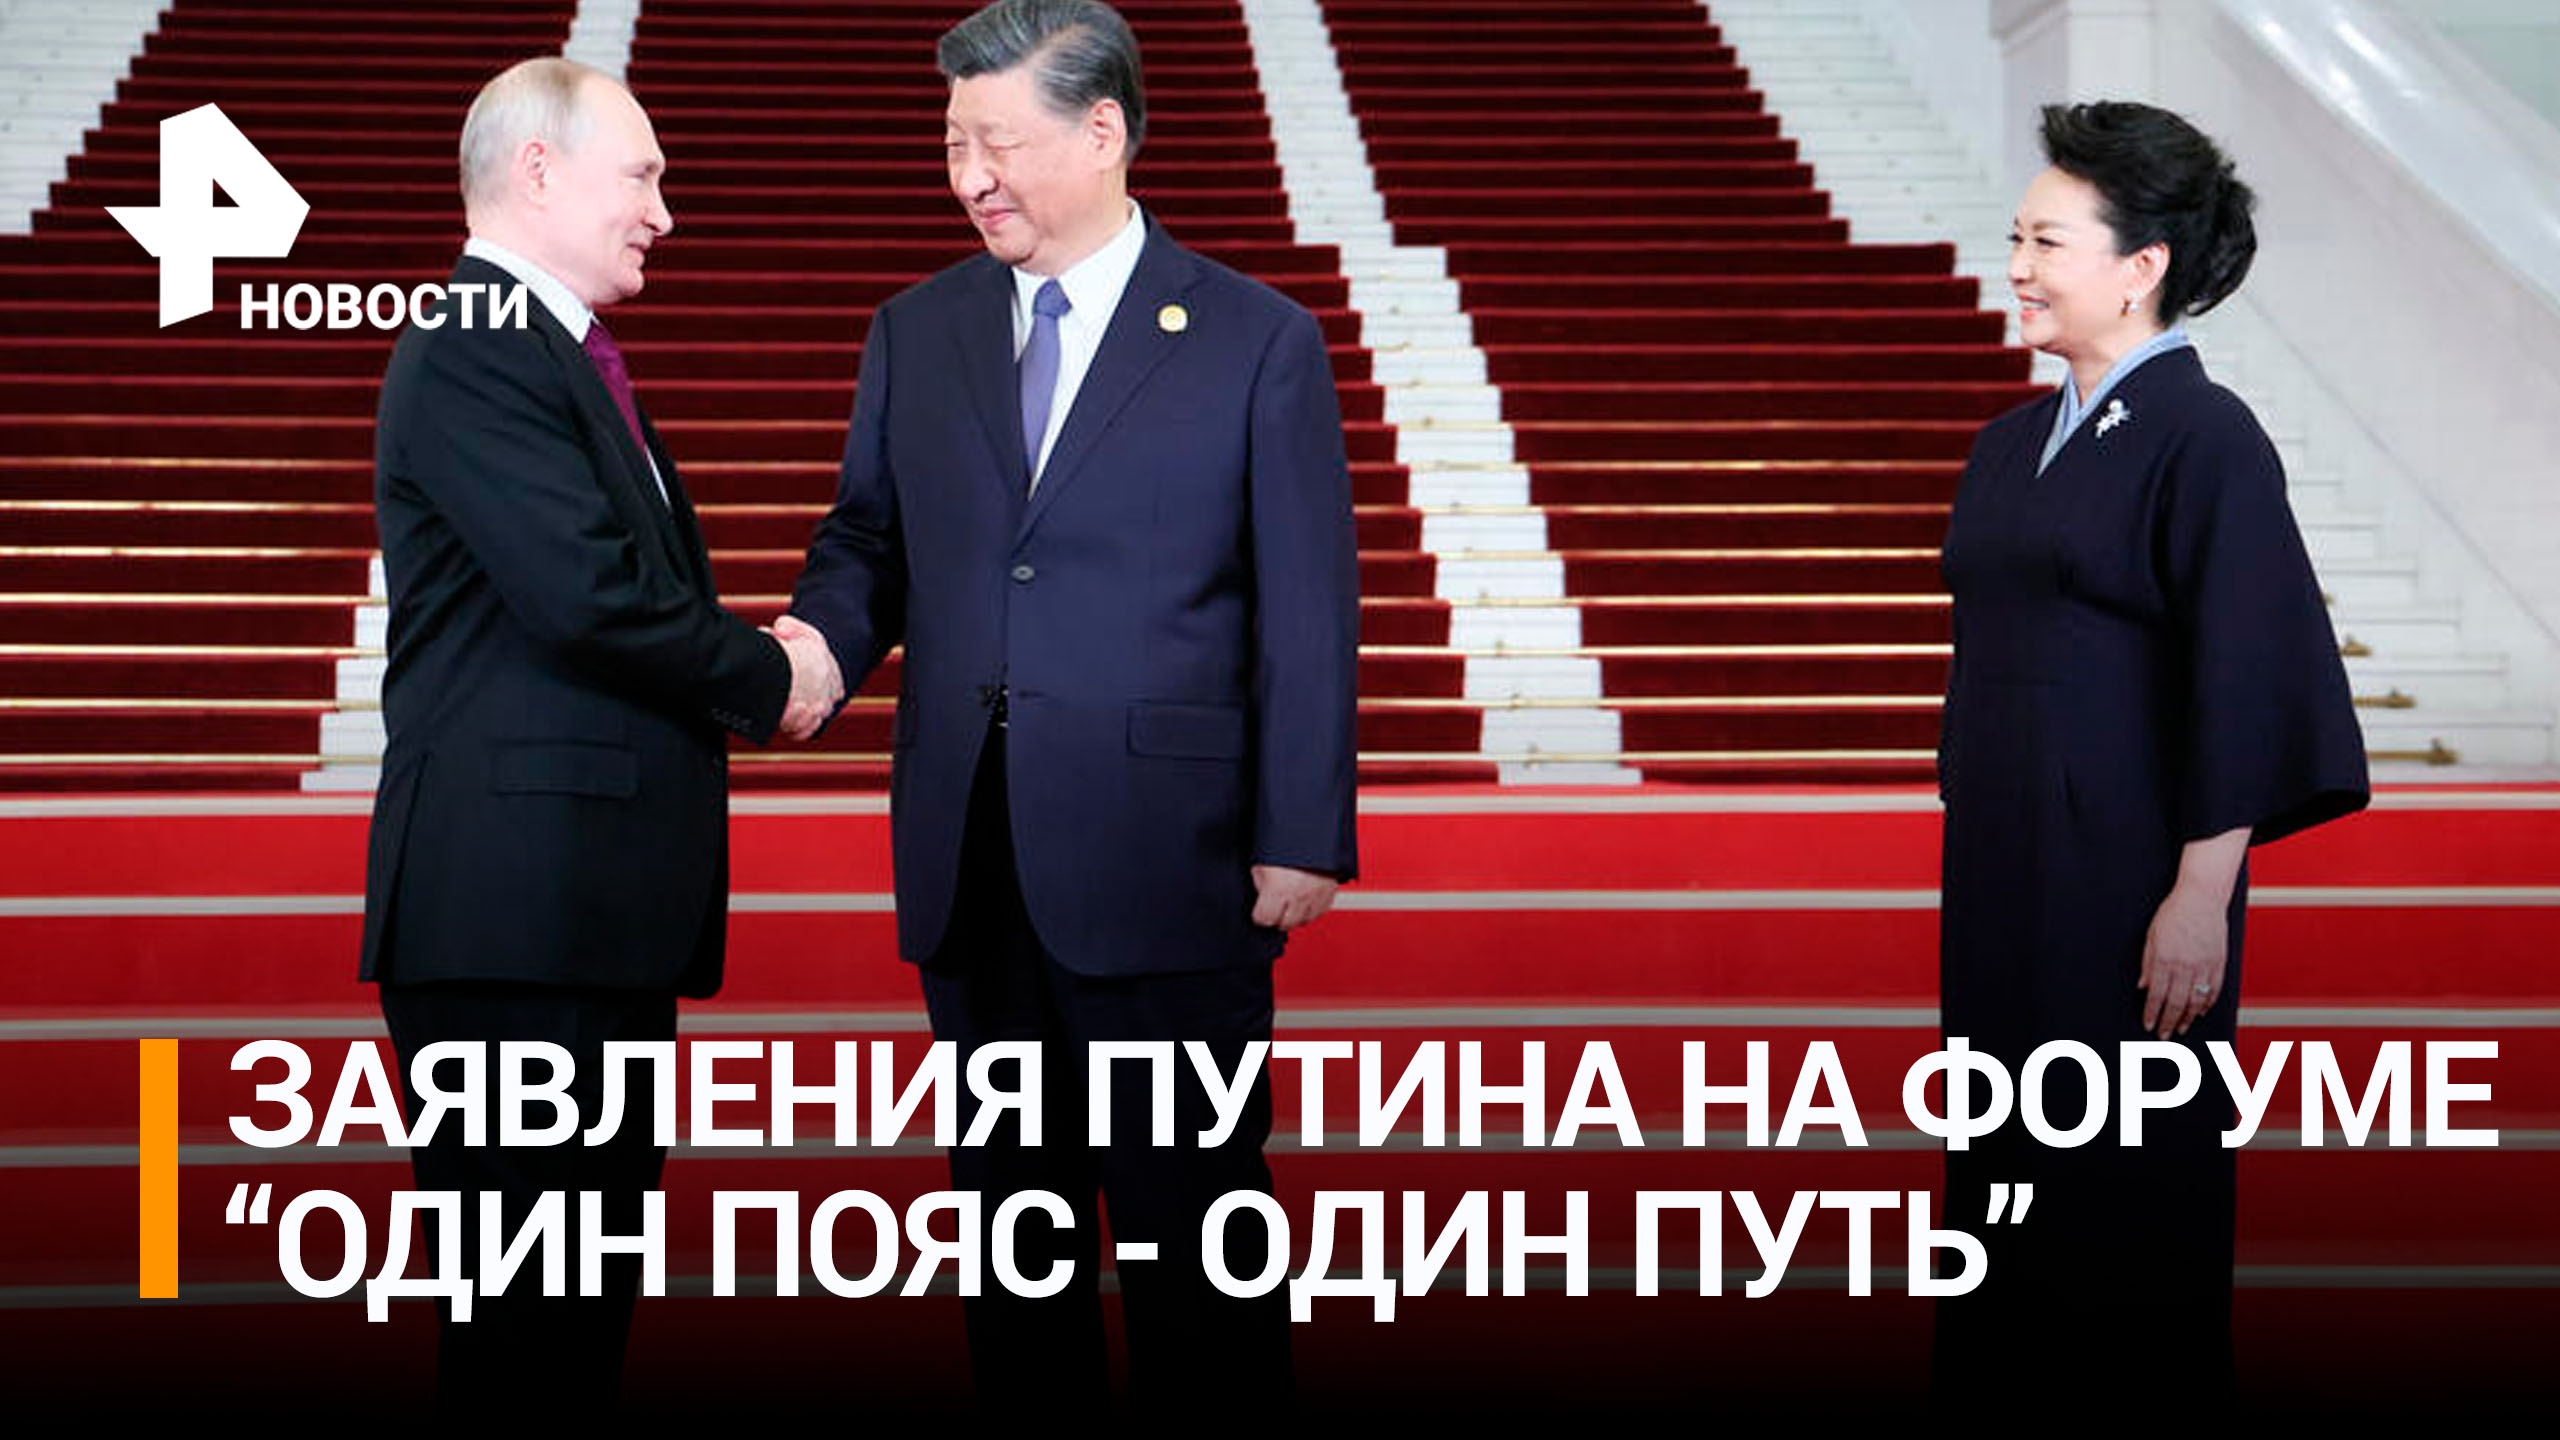 Китайские журналисты стоя слушали речь Путина на форуме в Пекине / РЕН Новости